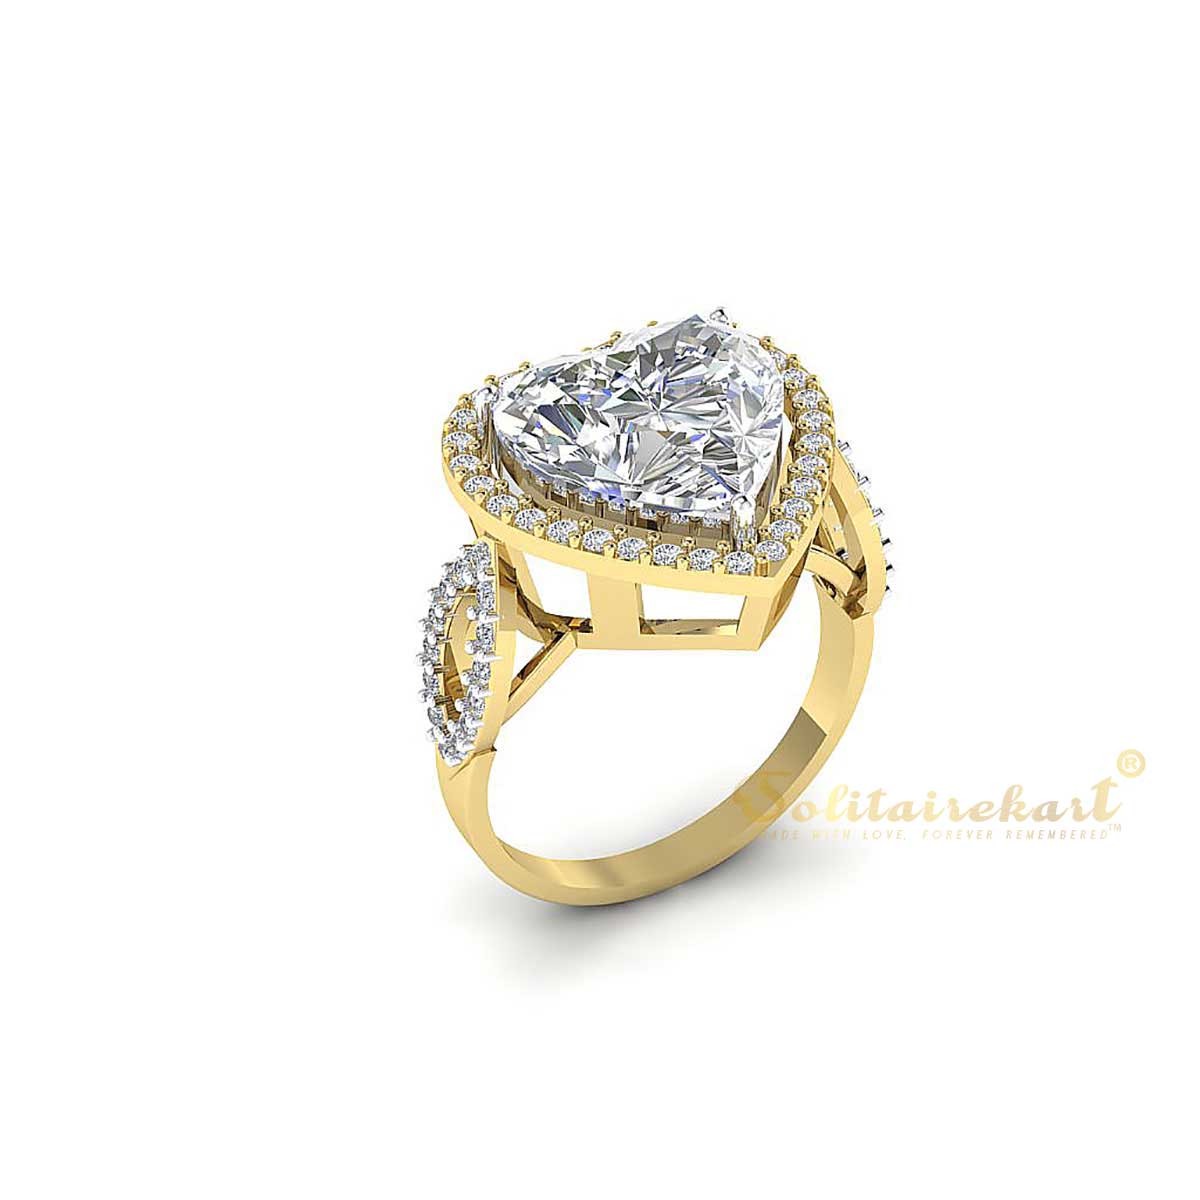 Buy quality 22k gold stylish diamond ring in Mumbai